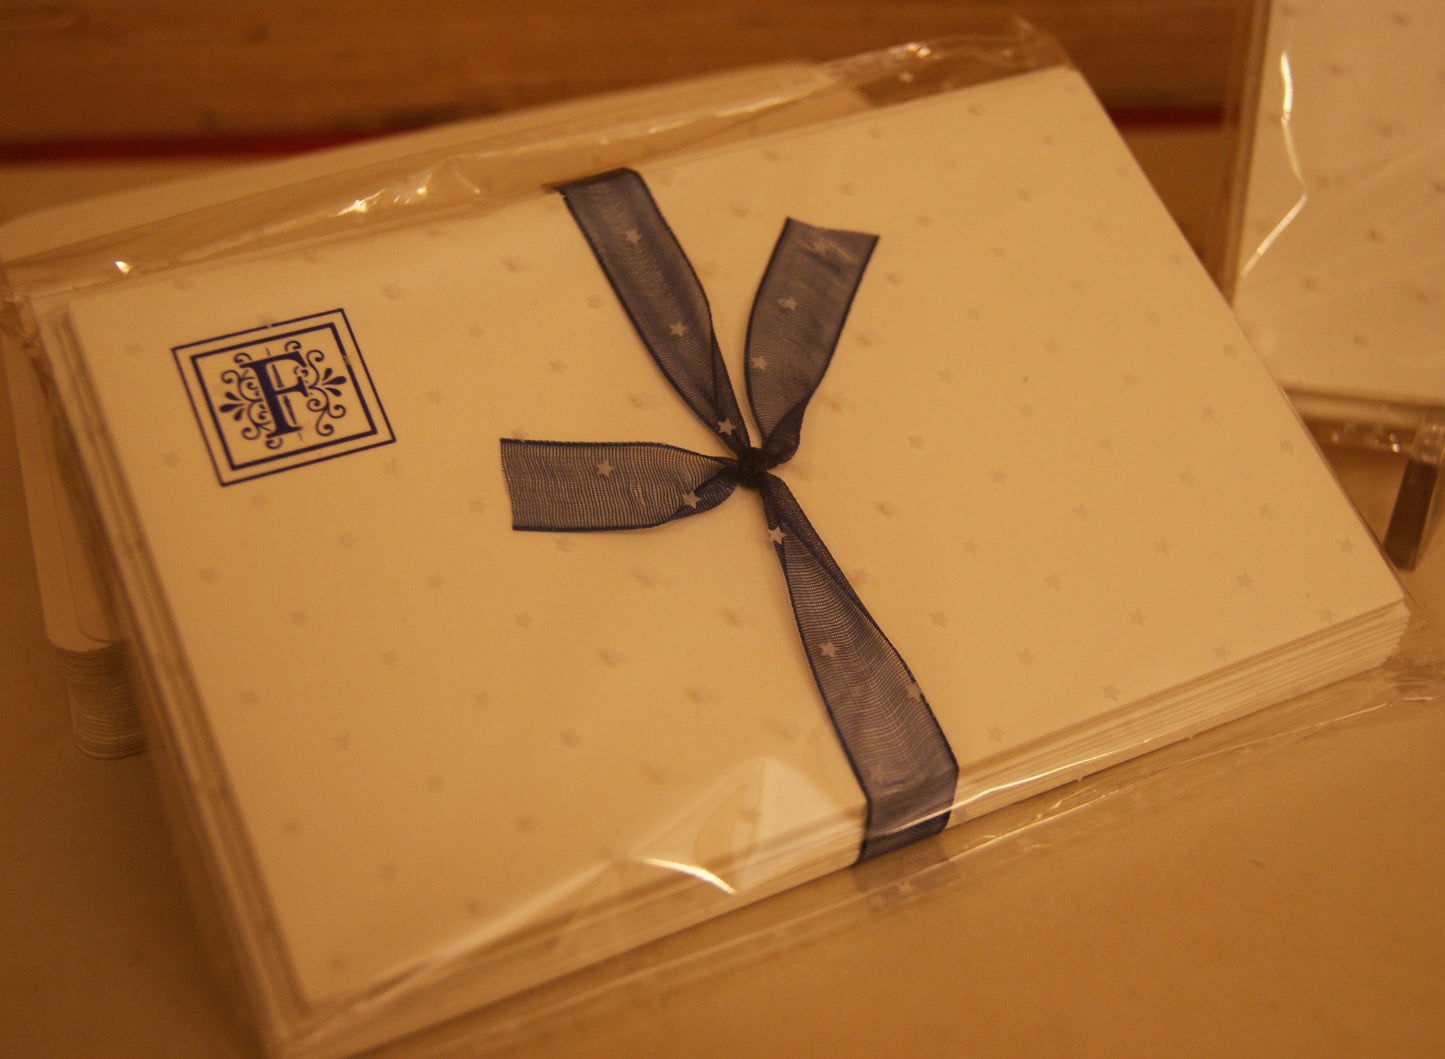 10 Cartoncini con iniziali tipografiche, con buste - 8,5 x 13,5 cm